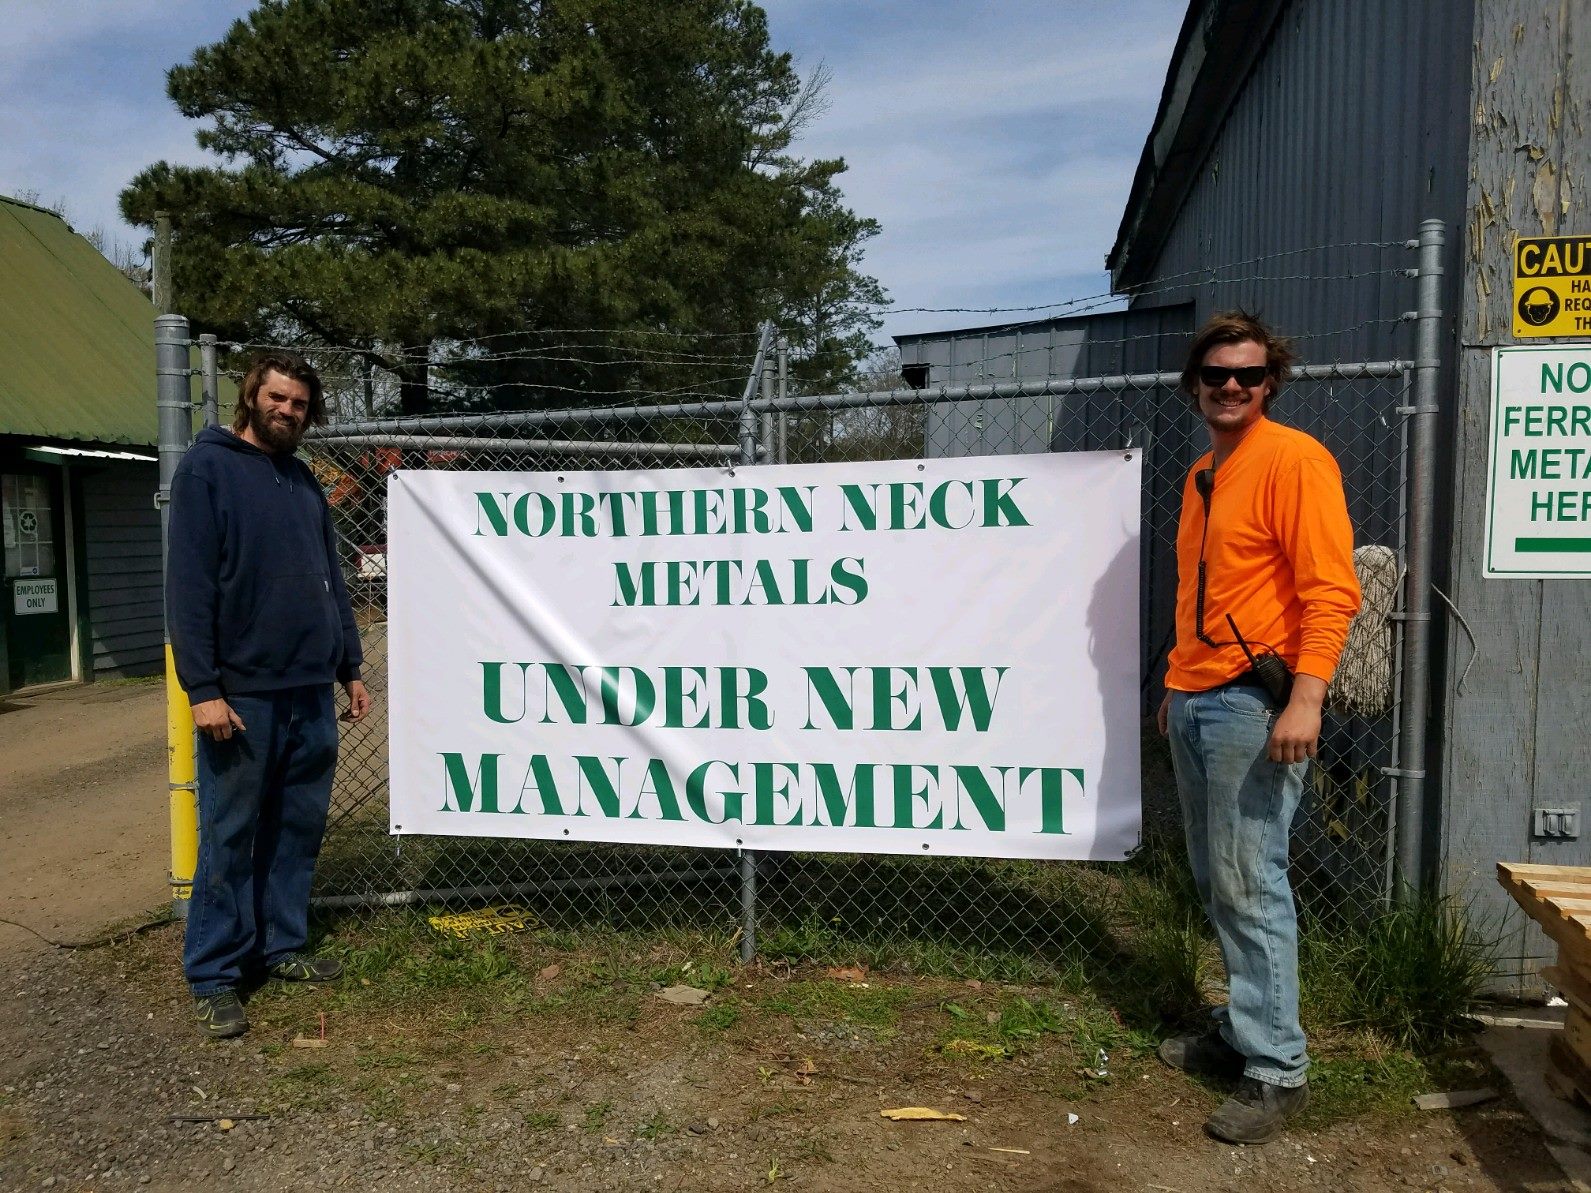 Northern Neck Metals